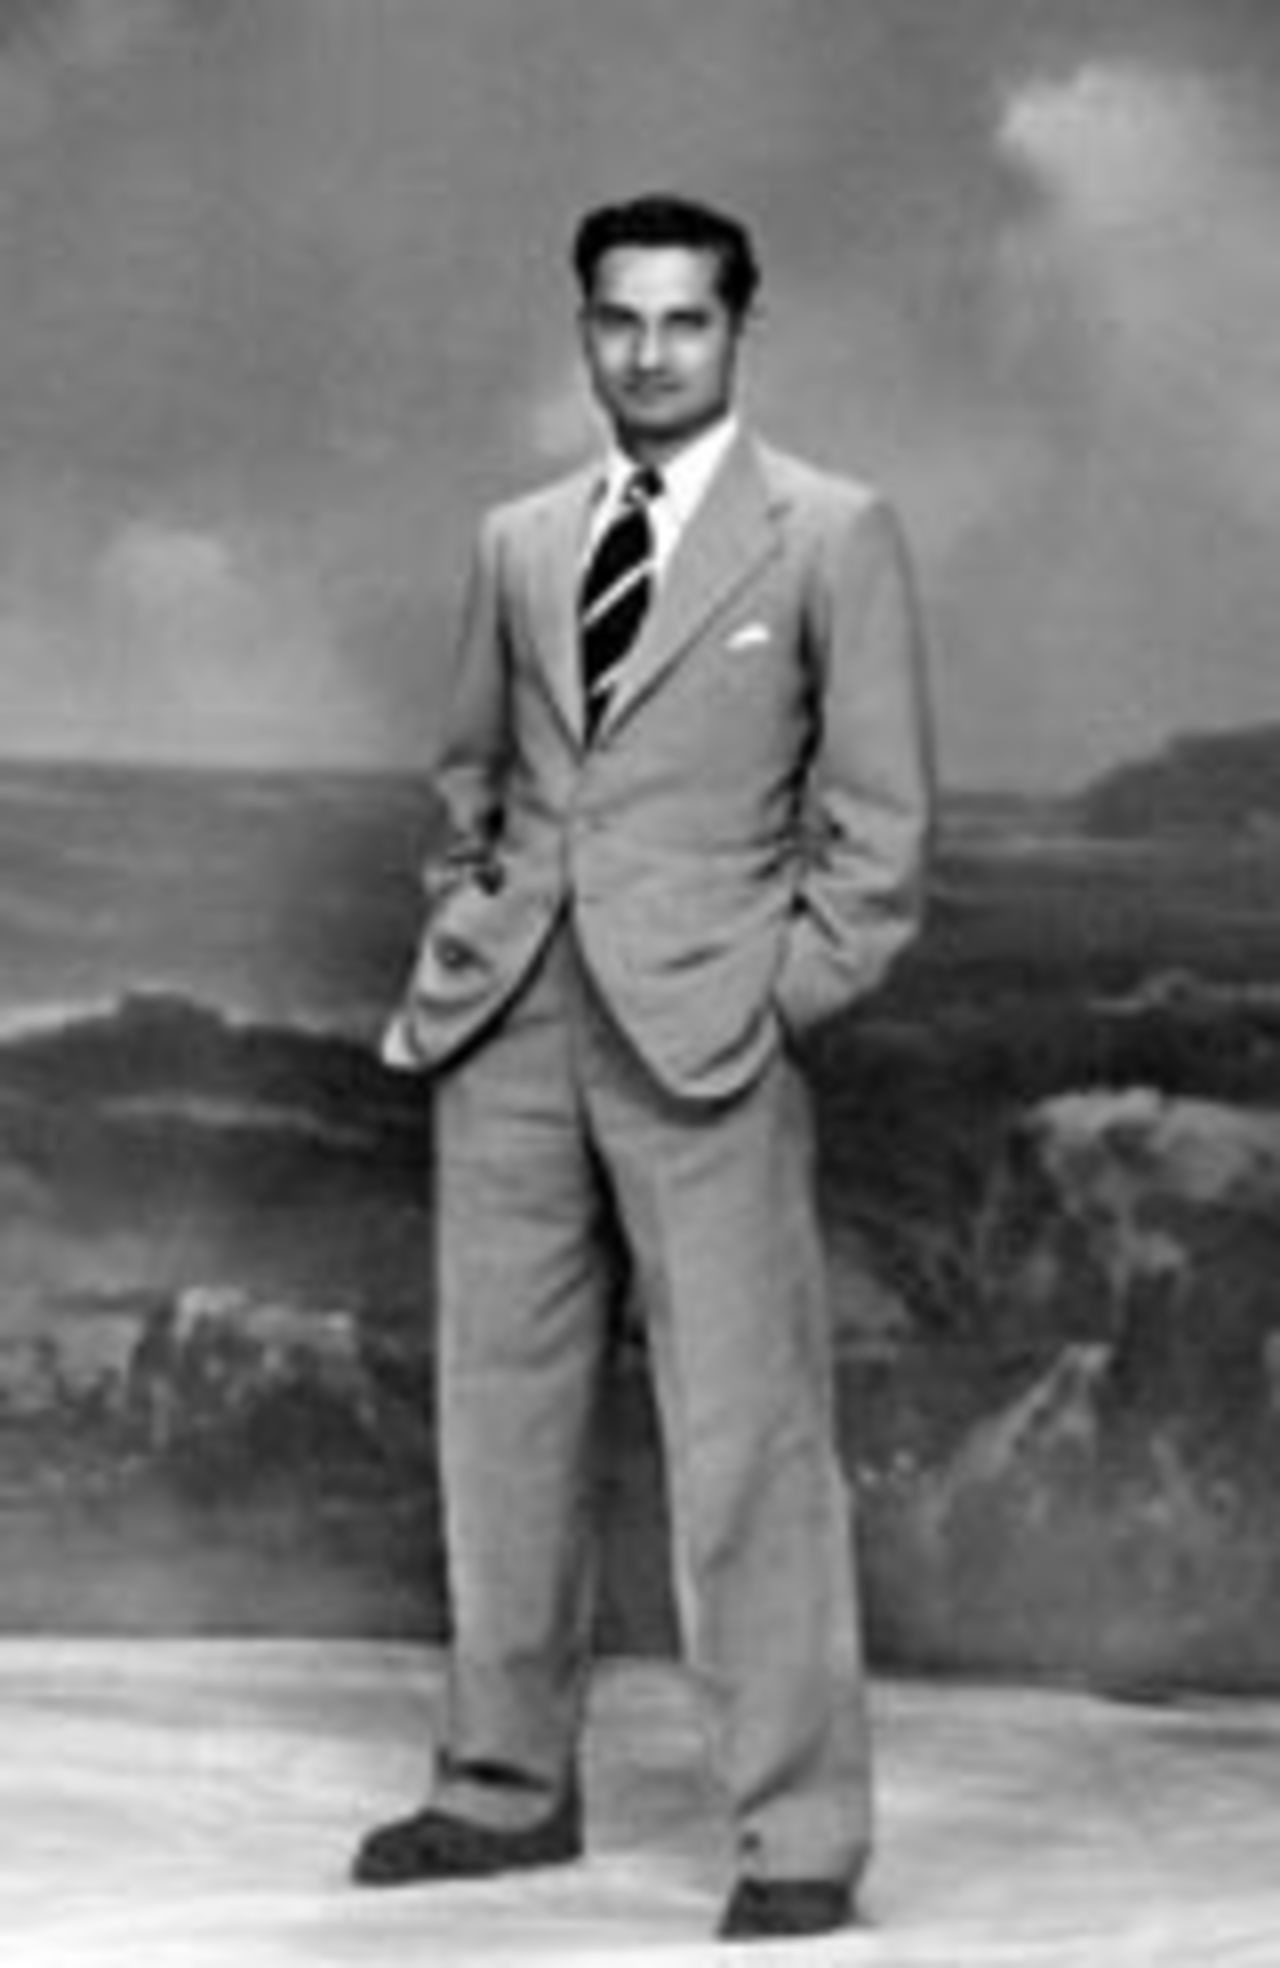 Vijay Hazare looking dapper in a suit